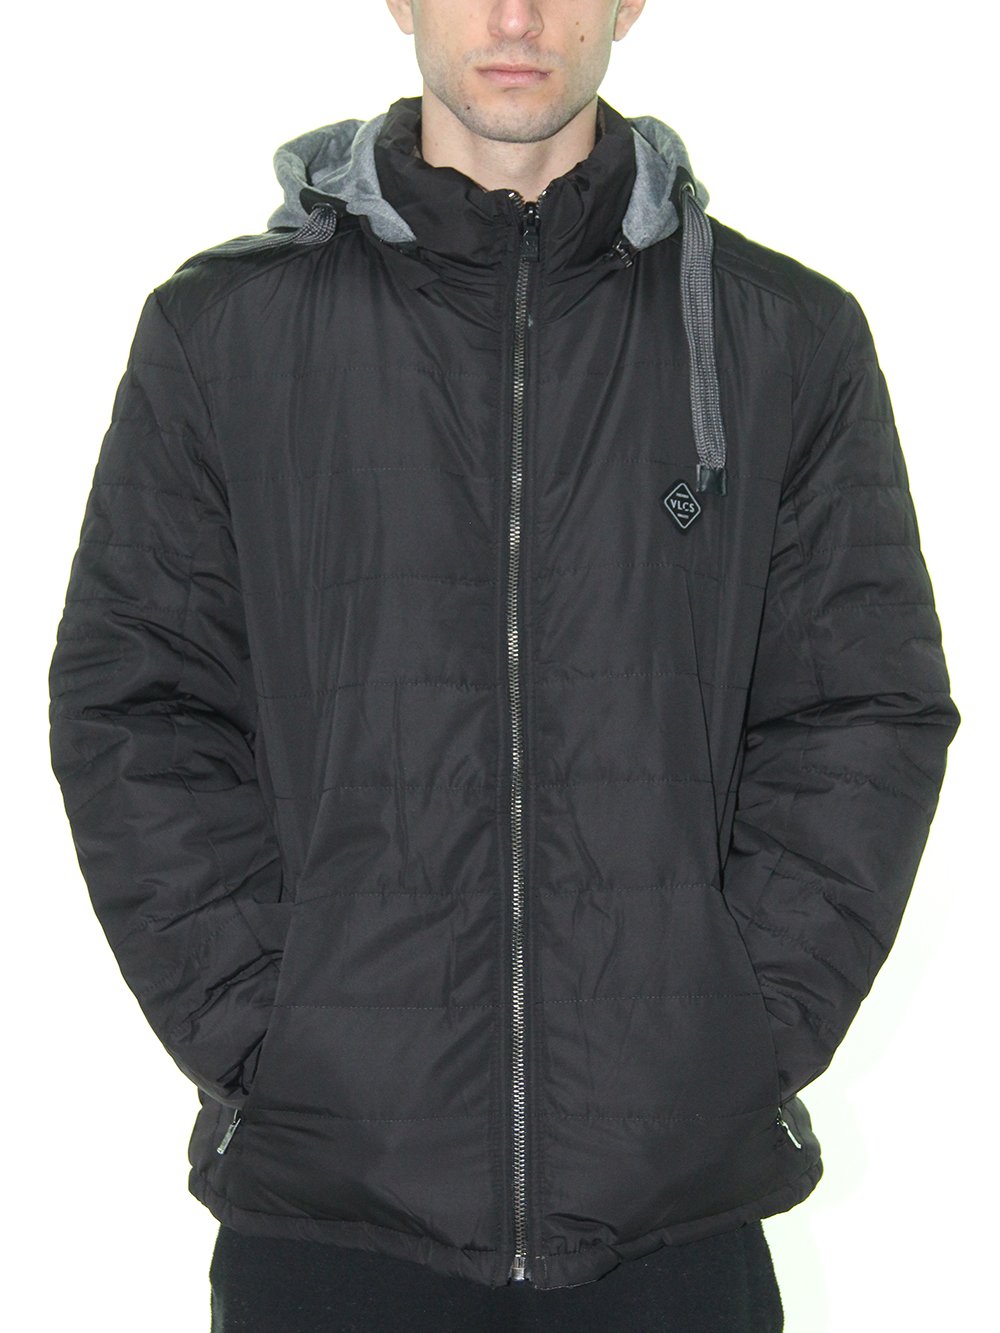 jaqueta vlcs dupla face proteção térmica masculina